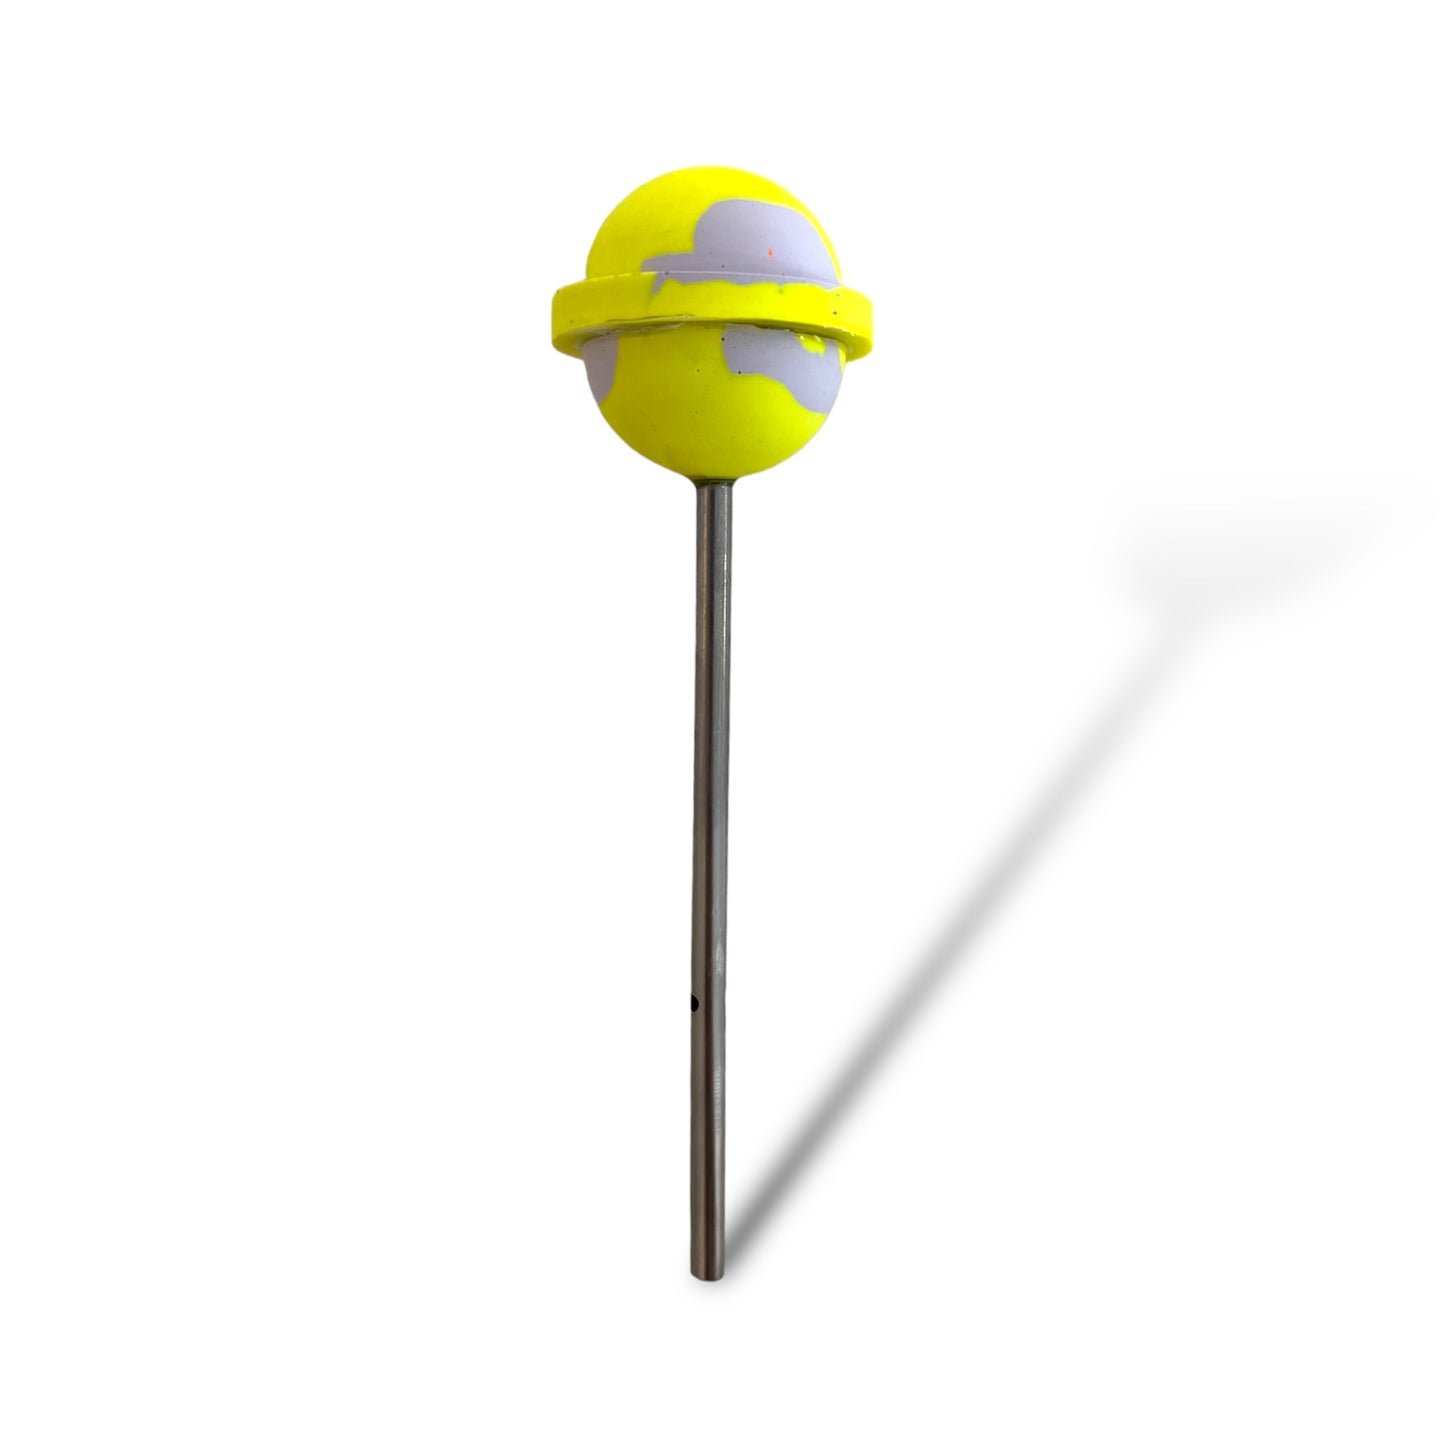 Concrete Ki lollipop